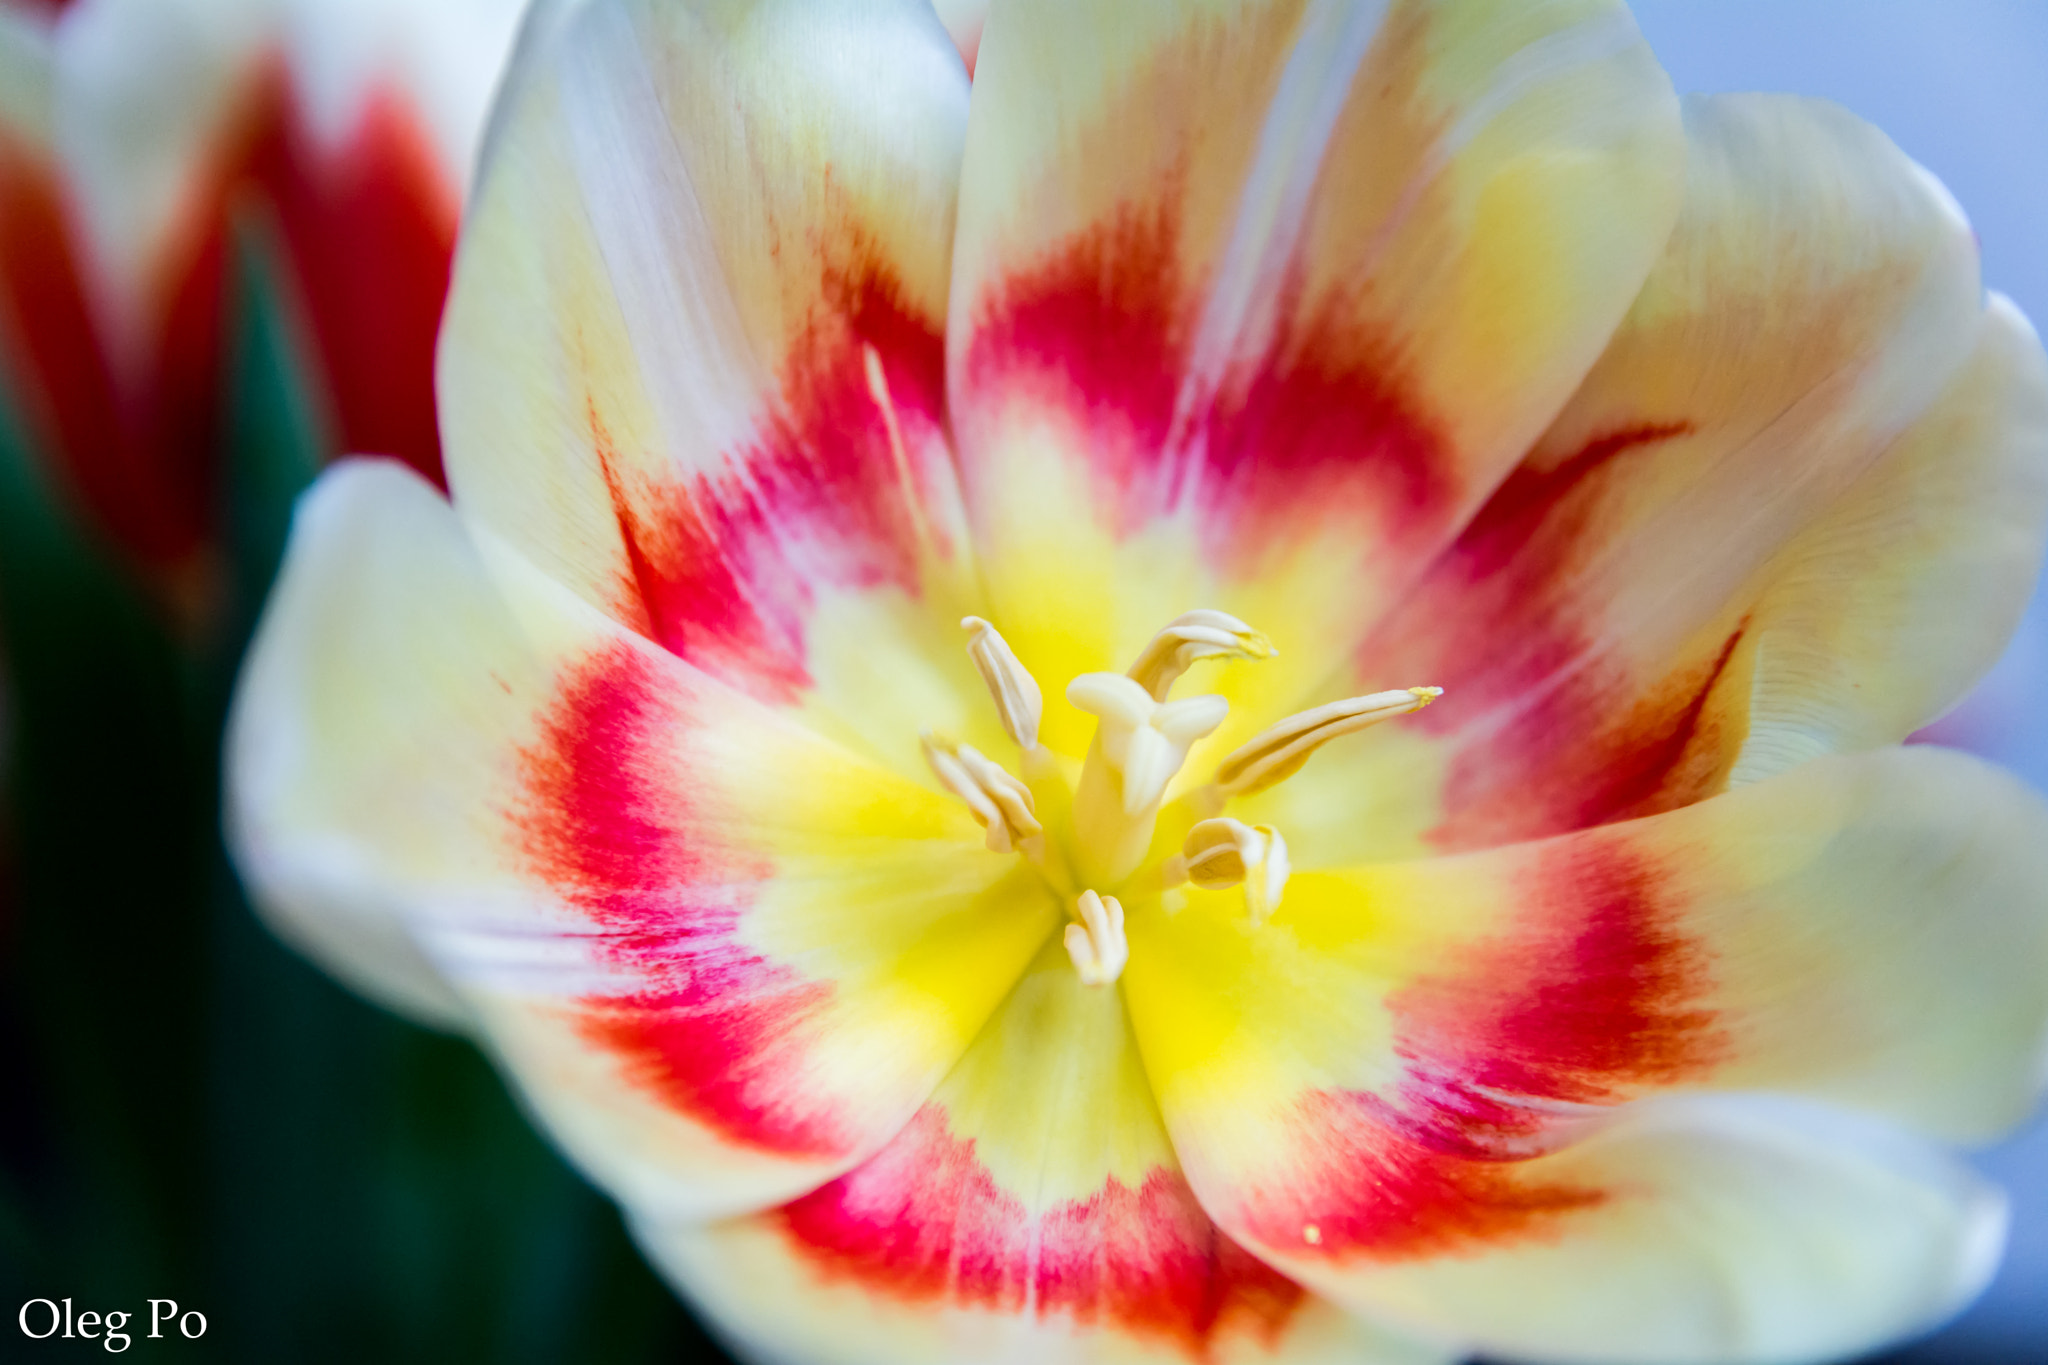 Nikon D5200 sample photo. Another beautiful tulip photography